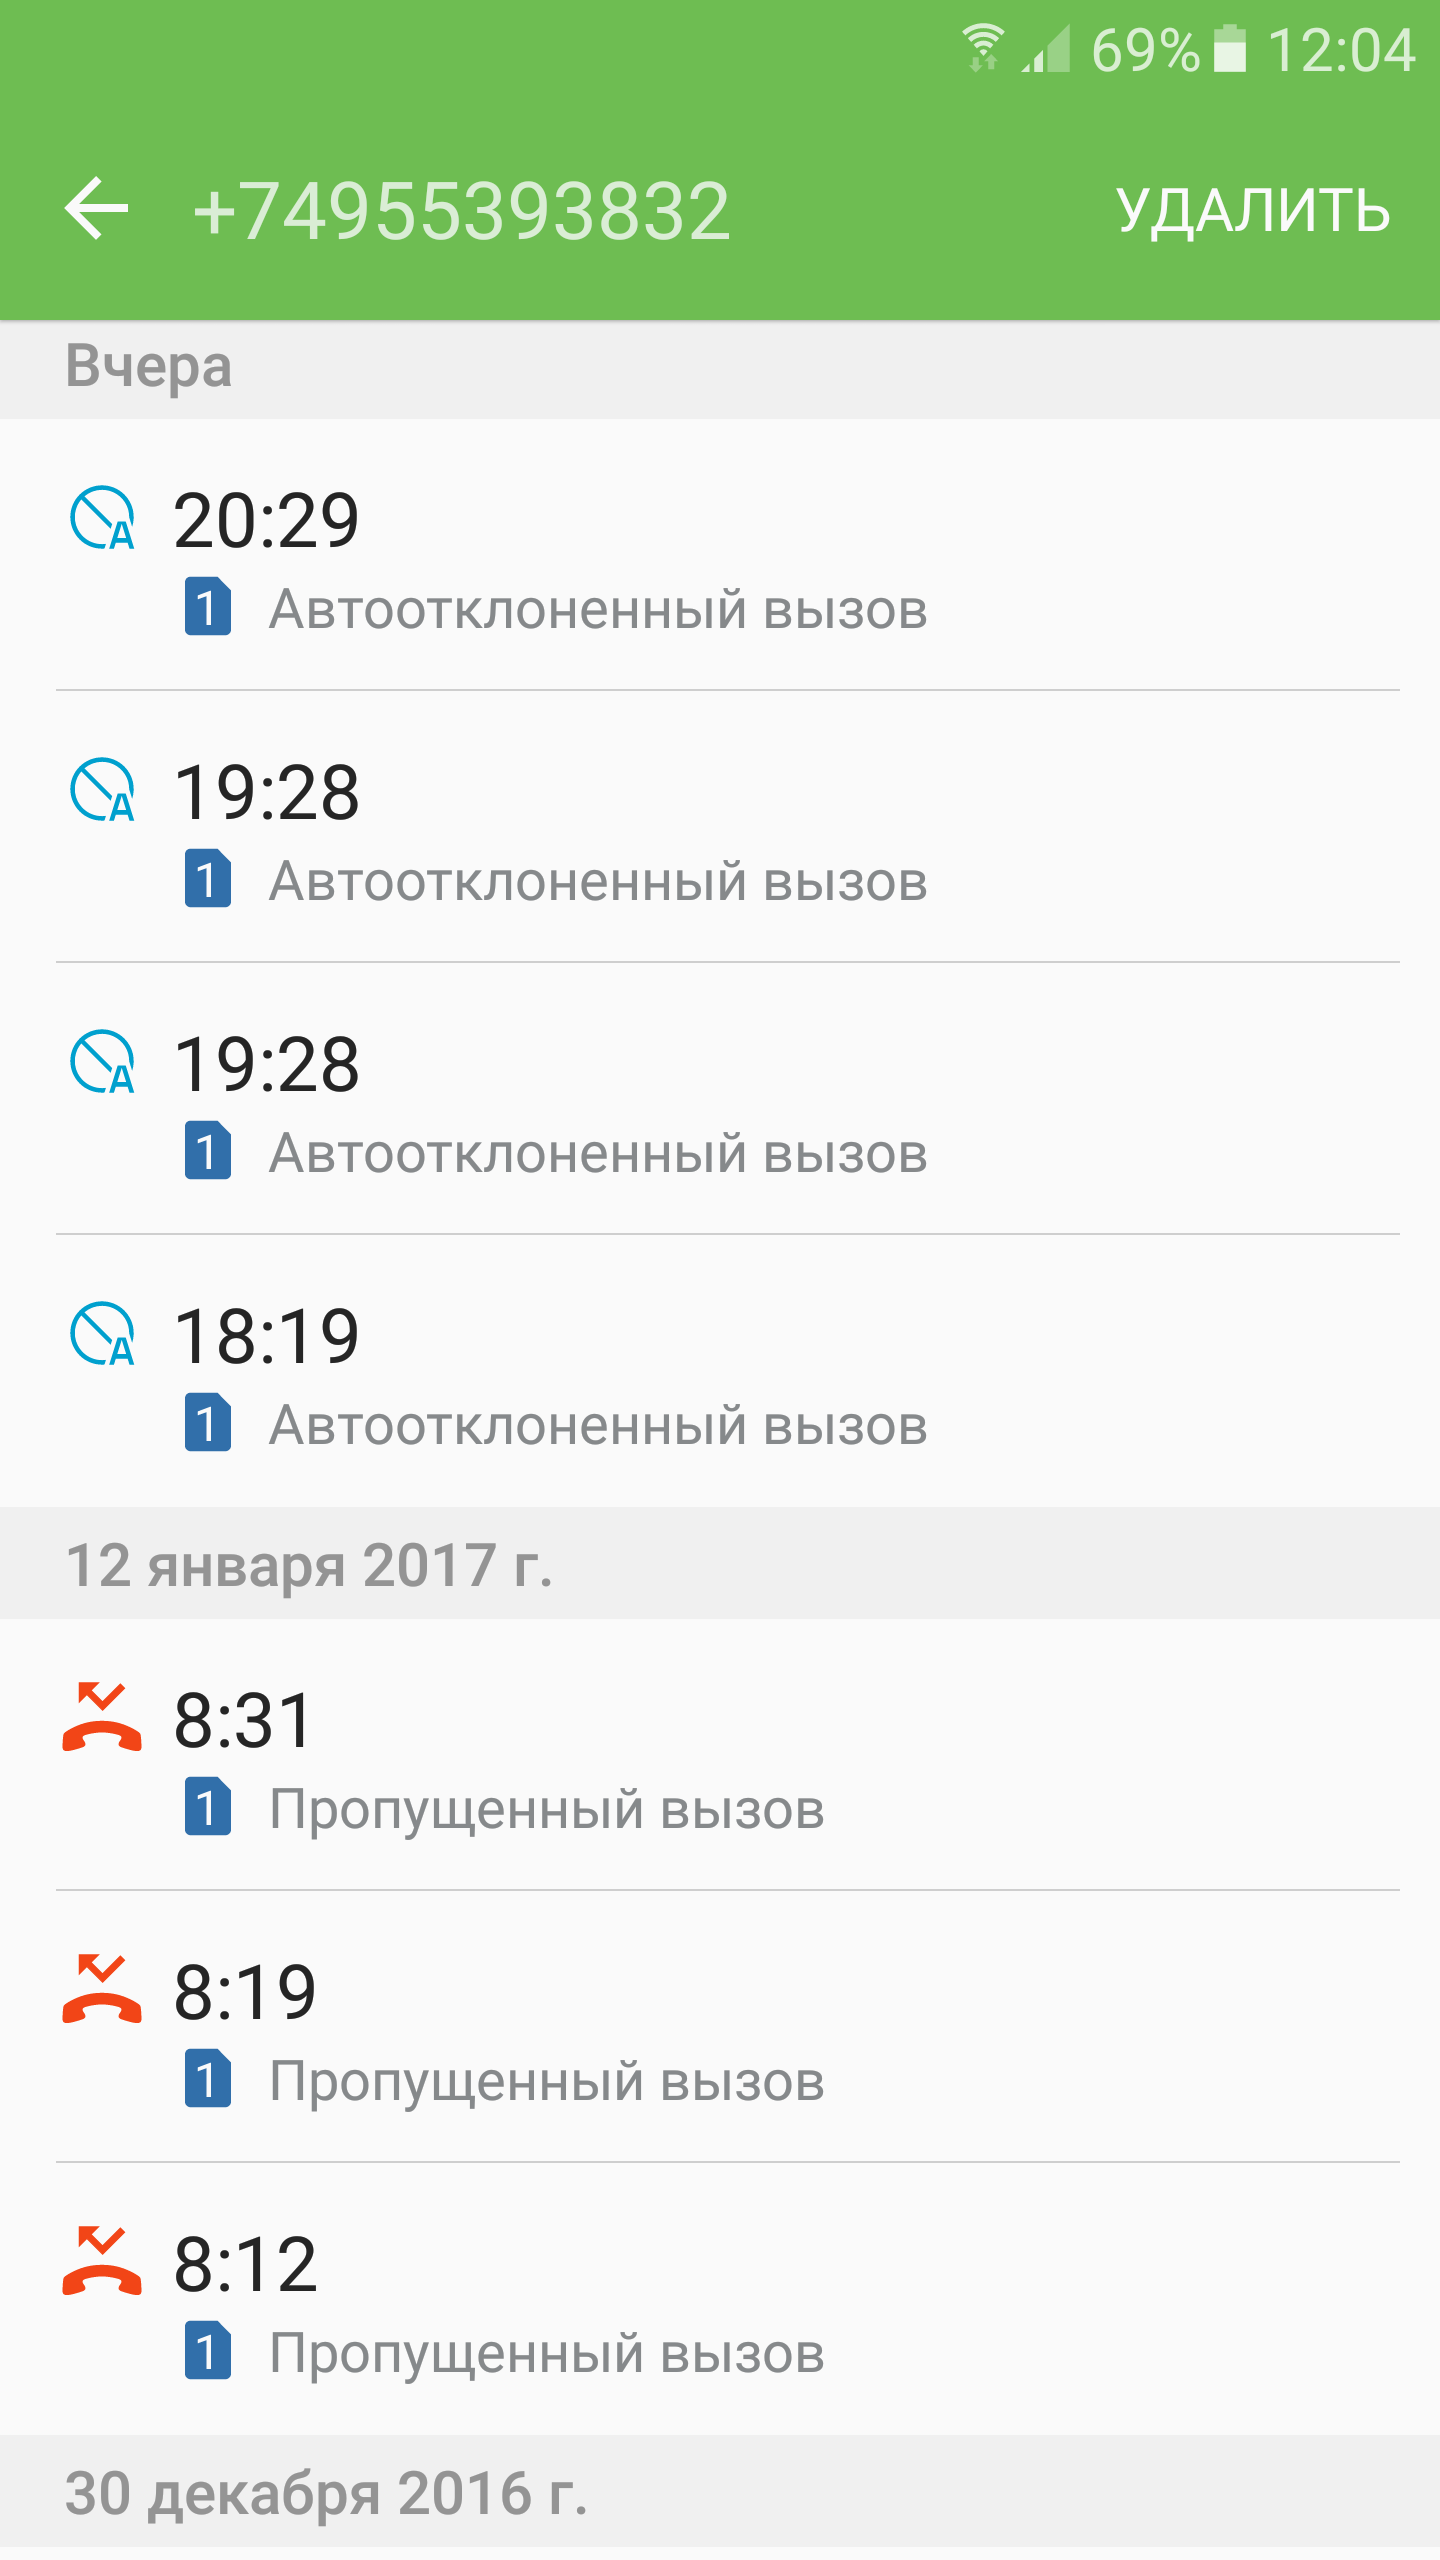 Саяногорск Инфо - screenshot_20170114-120419.png, Скачано: 545